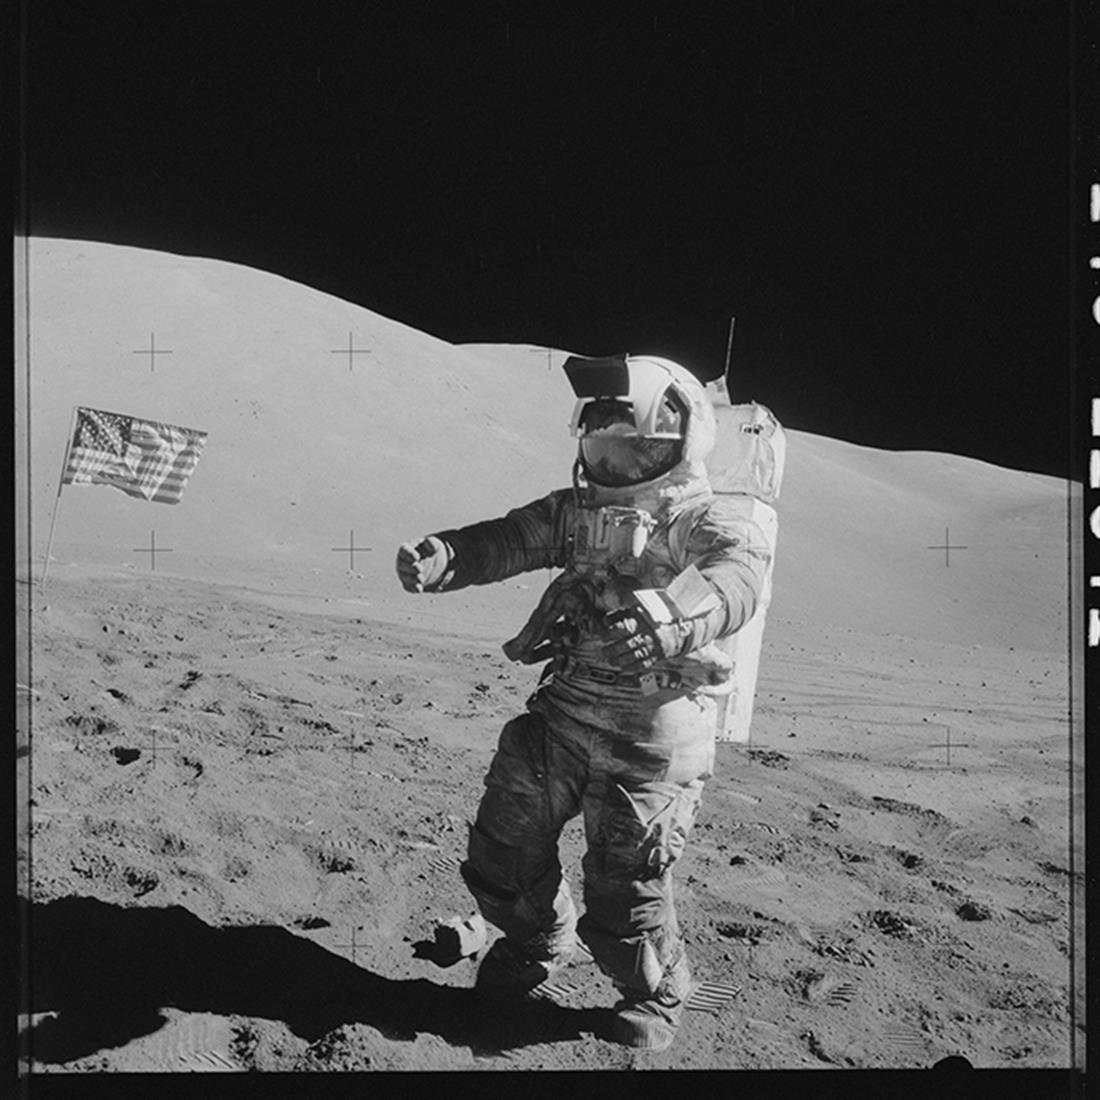 ΝΑΣΑ - Αποστολή - Απόλλων 11 - φεγγάρι - αρχείο - Νιλ Άρμστρονγκ